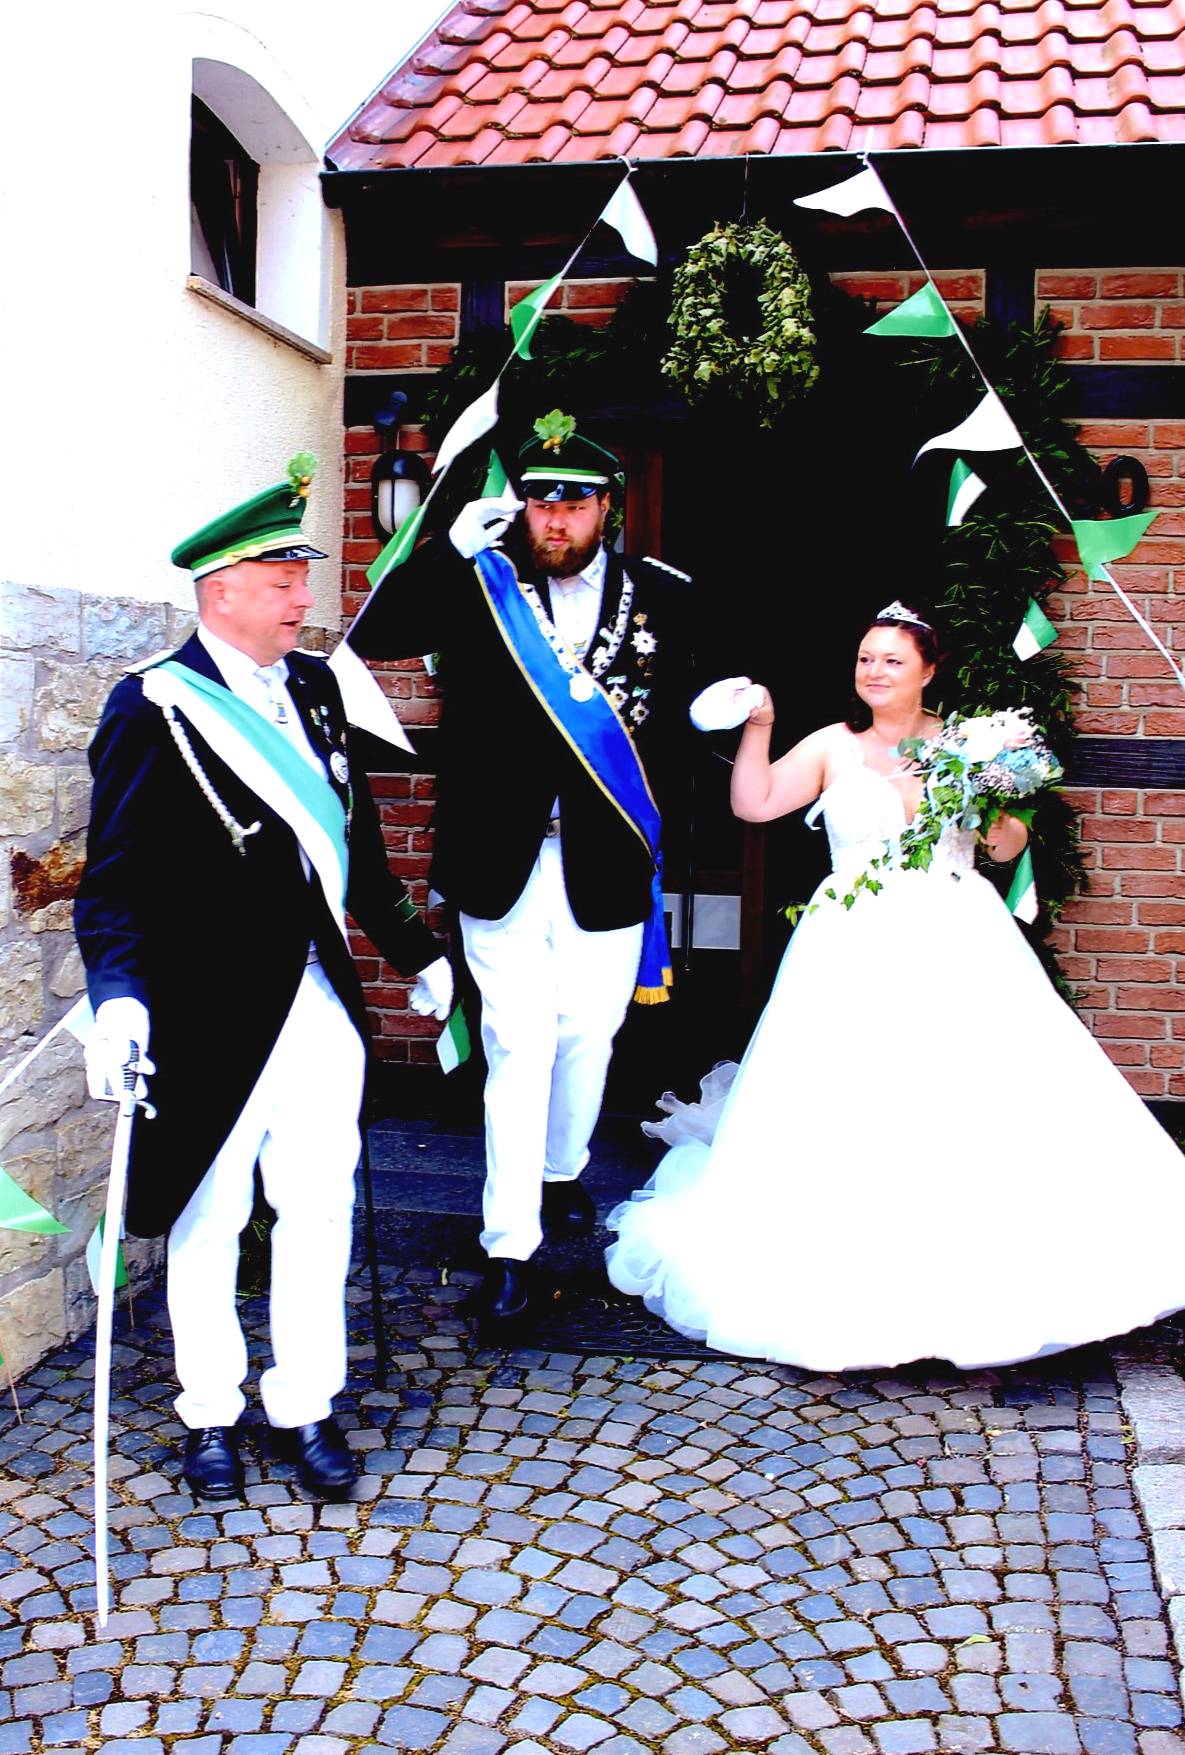 Ein Bild, das Hochzeitskleid, Kleidung, Person, Hochzeit enthält.

Automatisch generierte Beschreibung